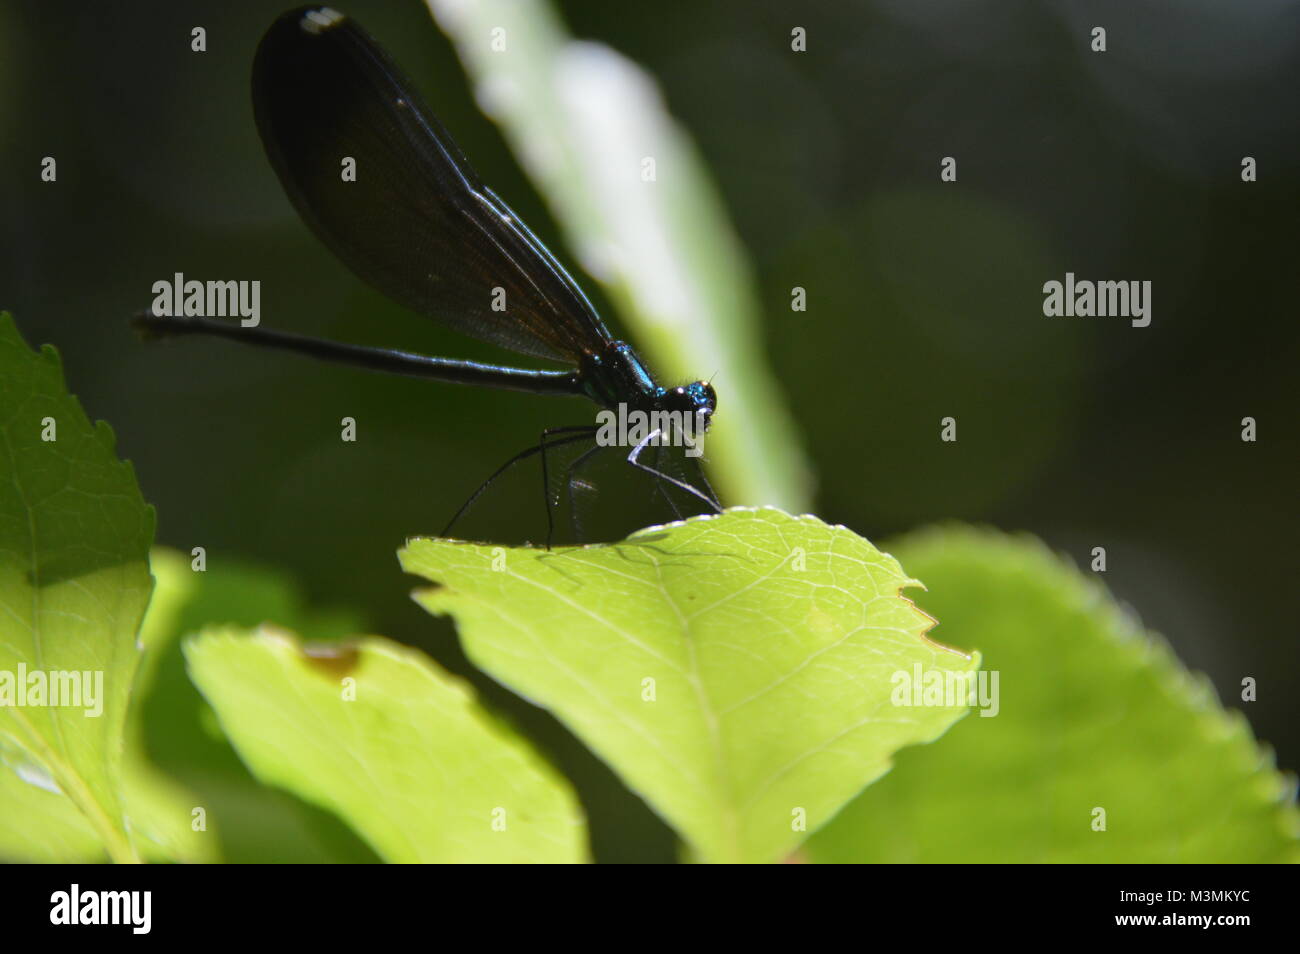 Un blu scuro mayfly seduto su una foglia verde con fogliame verde (sfocata) nello sfondo dell'immagine. Prese a Great Falls, VA Foto Stock